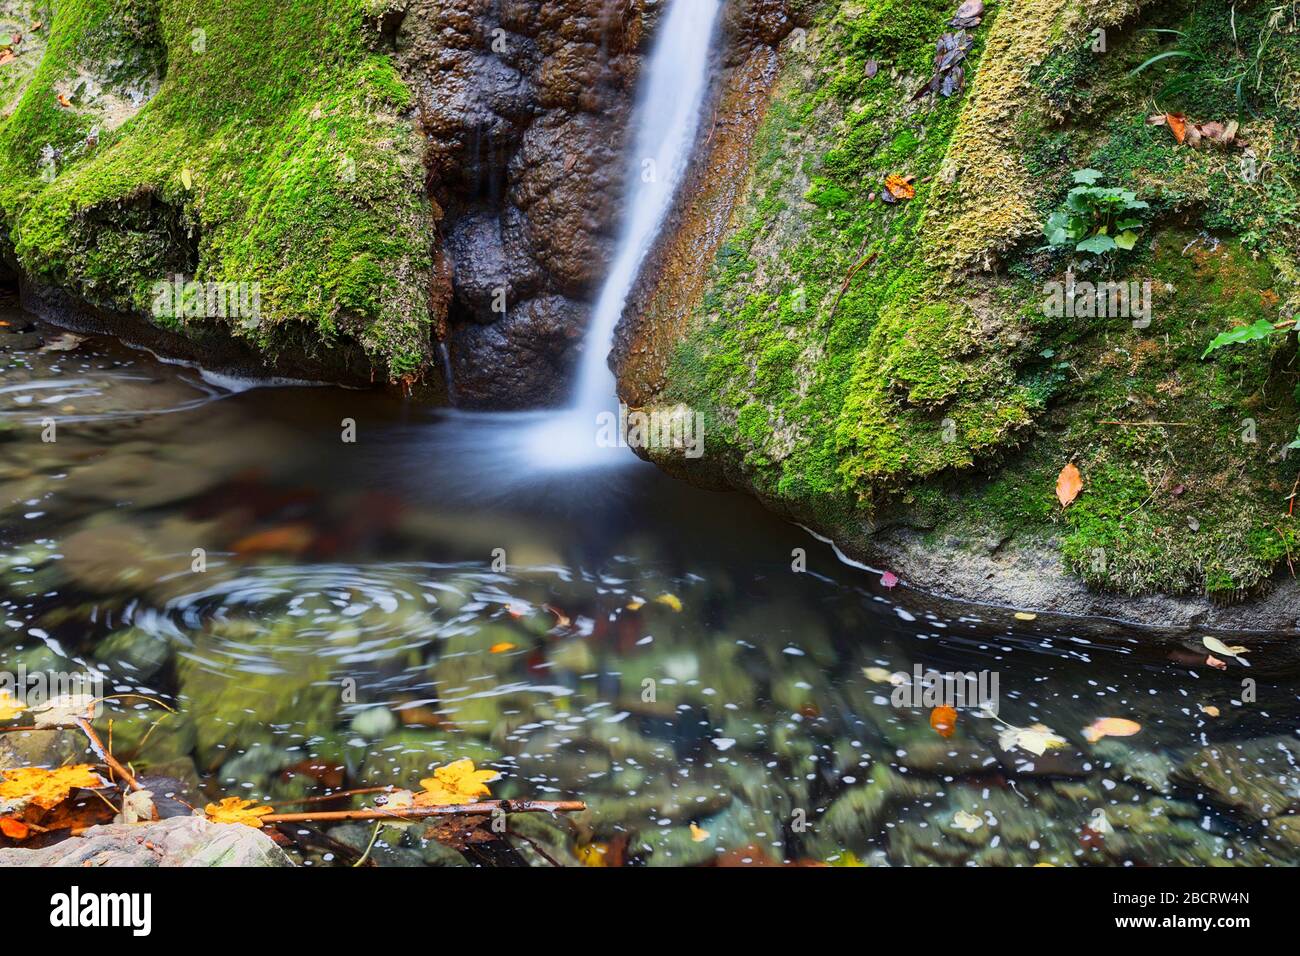 Belle chute d'eau de Susara en automne, montagnes d'Anina, Roumanie Banque D'Images